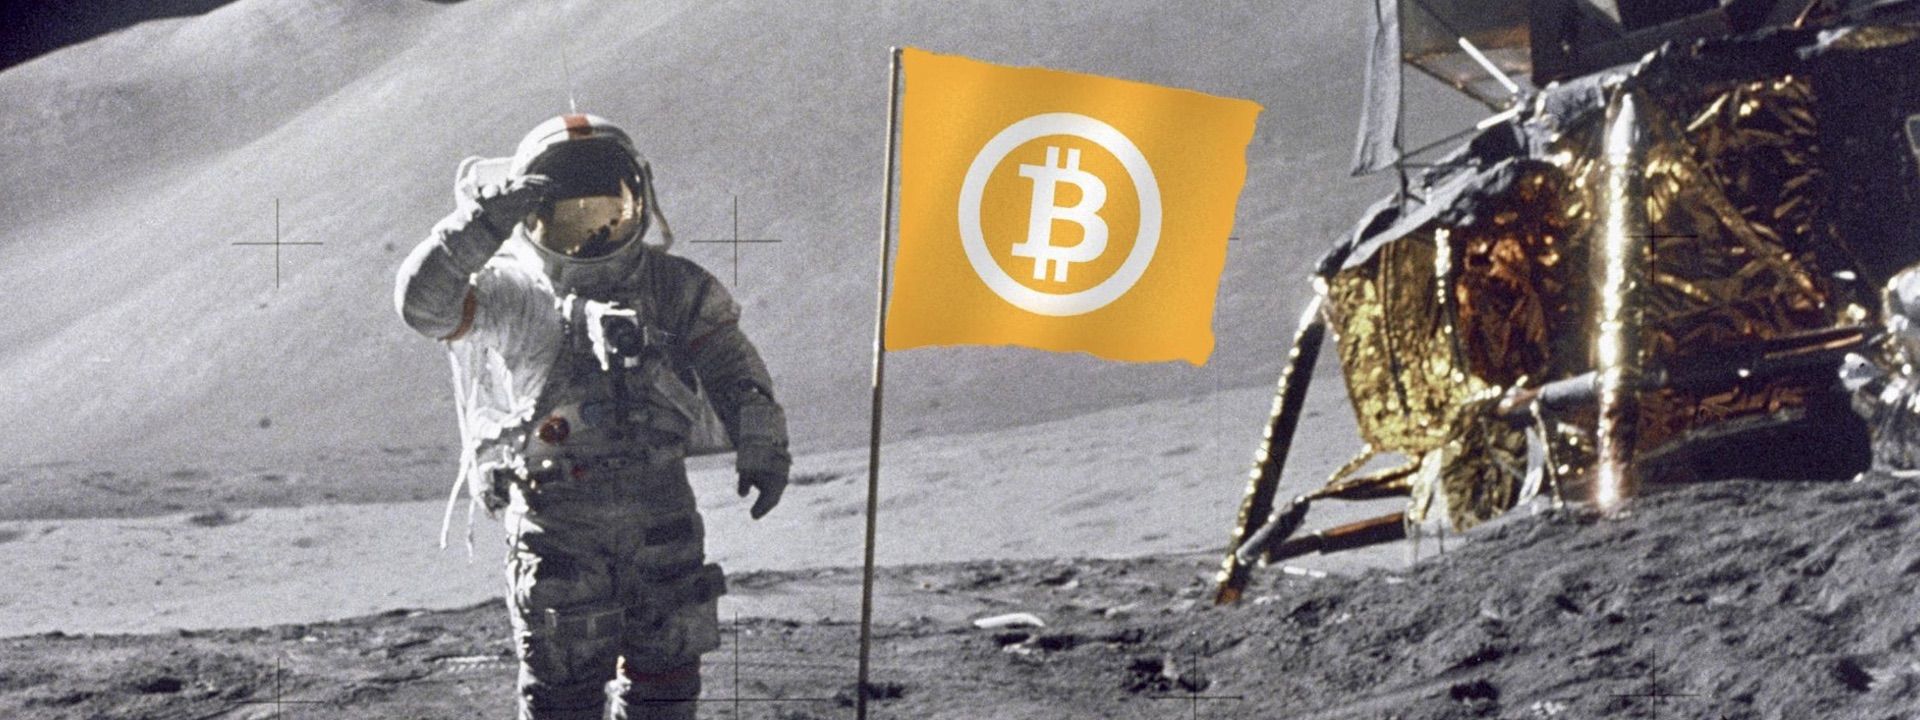 Báo cáo mới cho rằng Bitcoin sẽ chạm 96k trong 5 năm tới!